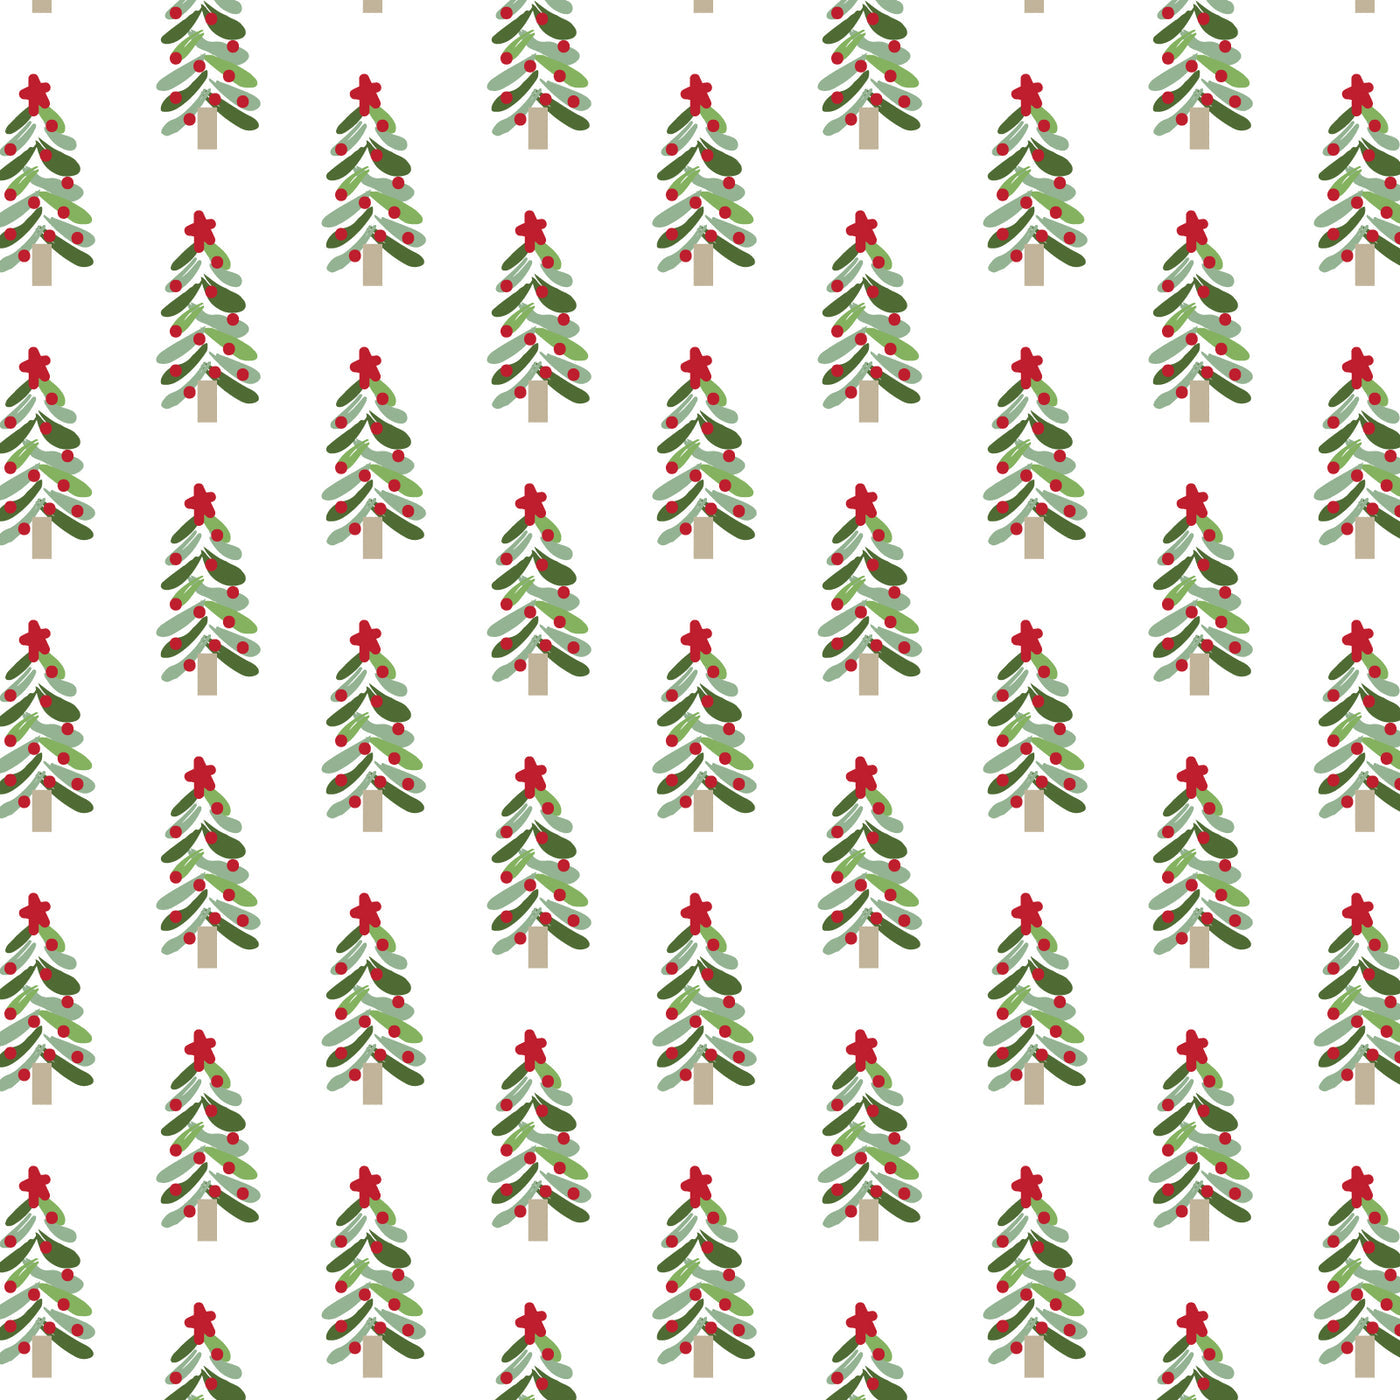 Oh Christmas Tree Grayson Pajama Set